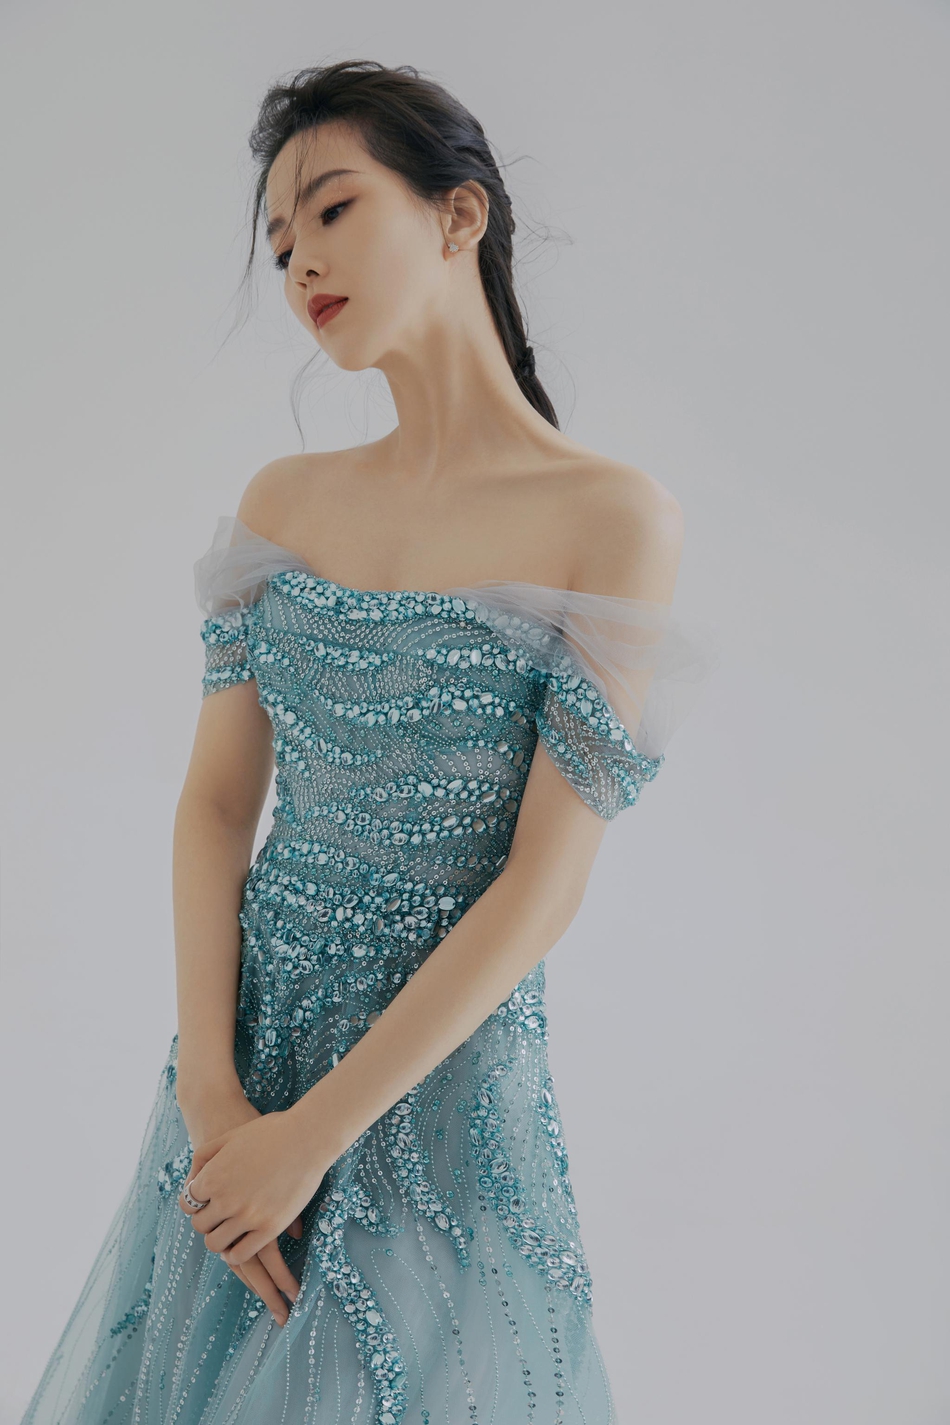 刘诗诗穿蓝色钻石长裙温柔优雅 大秀完美肩颈线条气质迷人